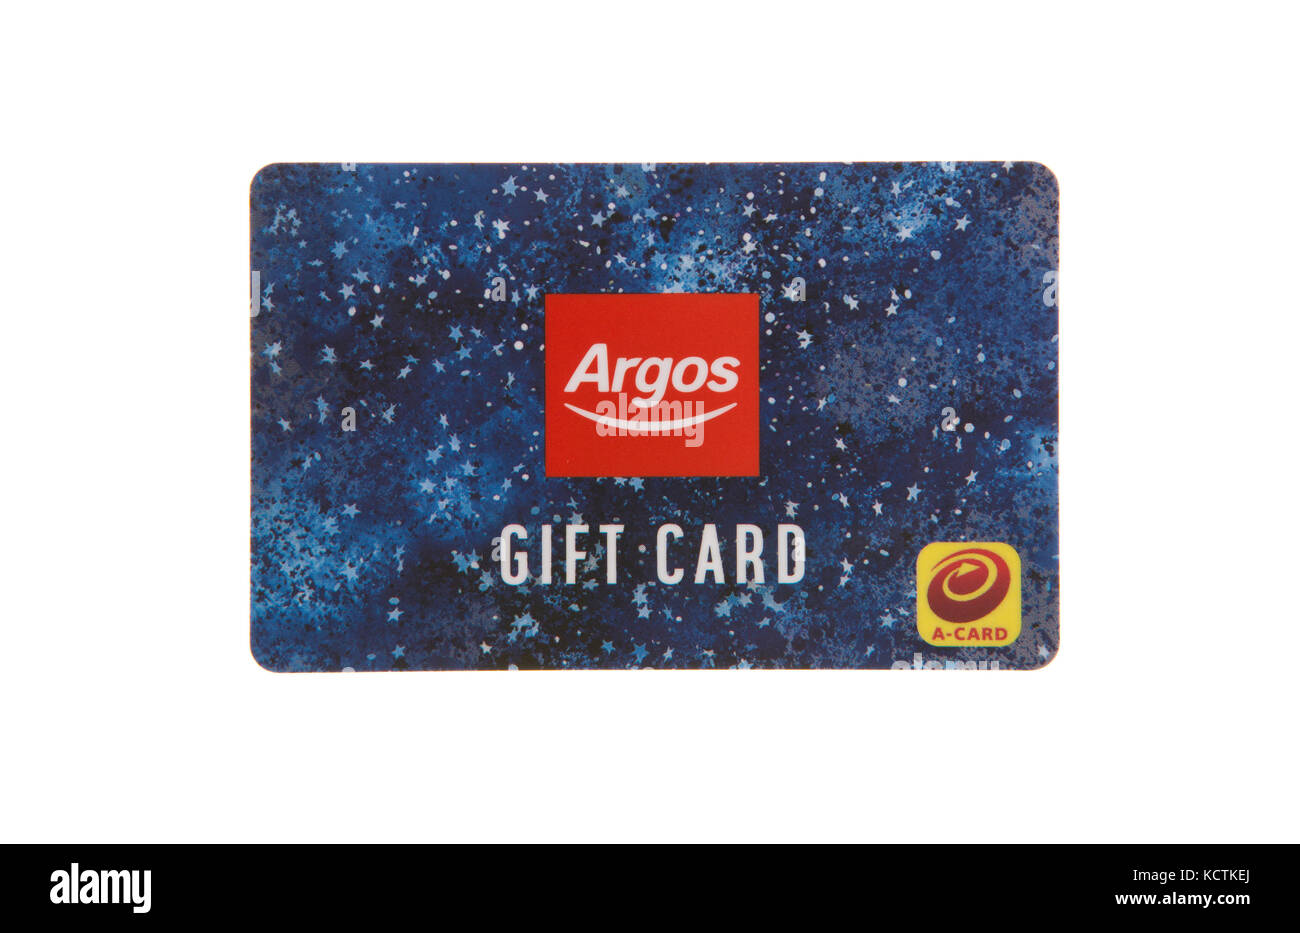 SWINDON, UK - OCTOBER 7, 2017: Argos Gift Card on a white background Stock Photo